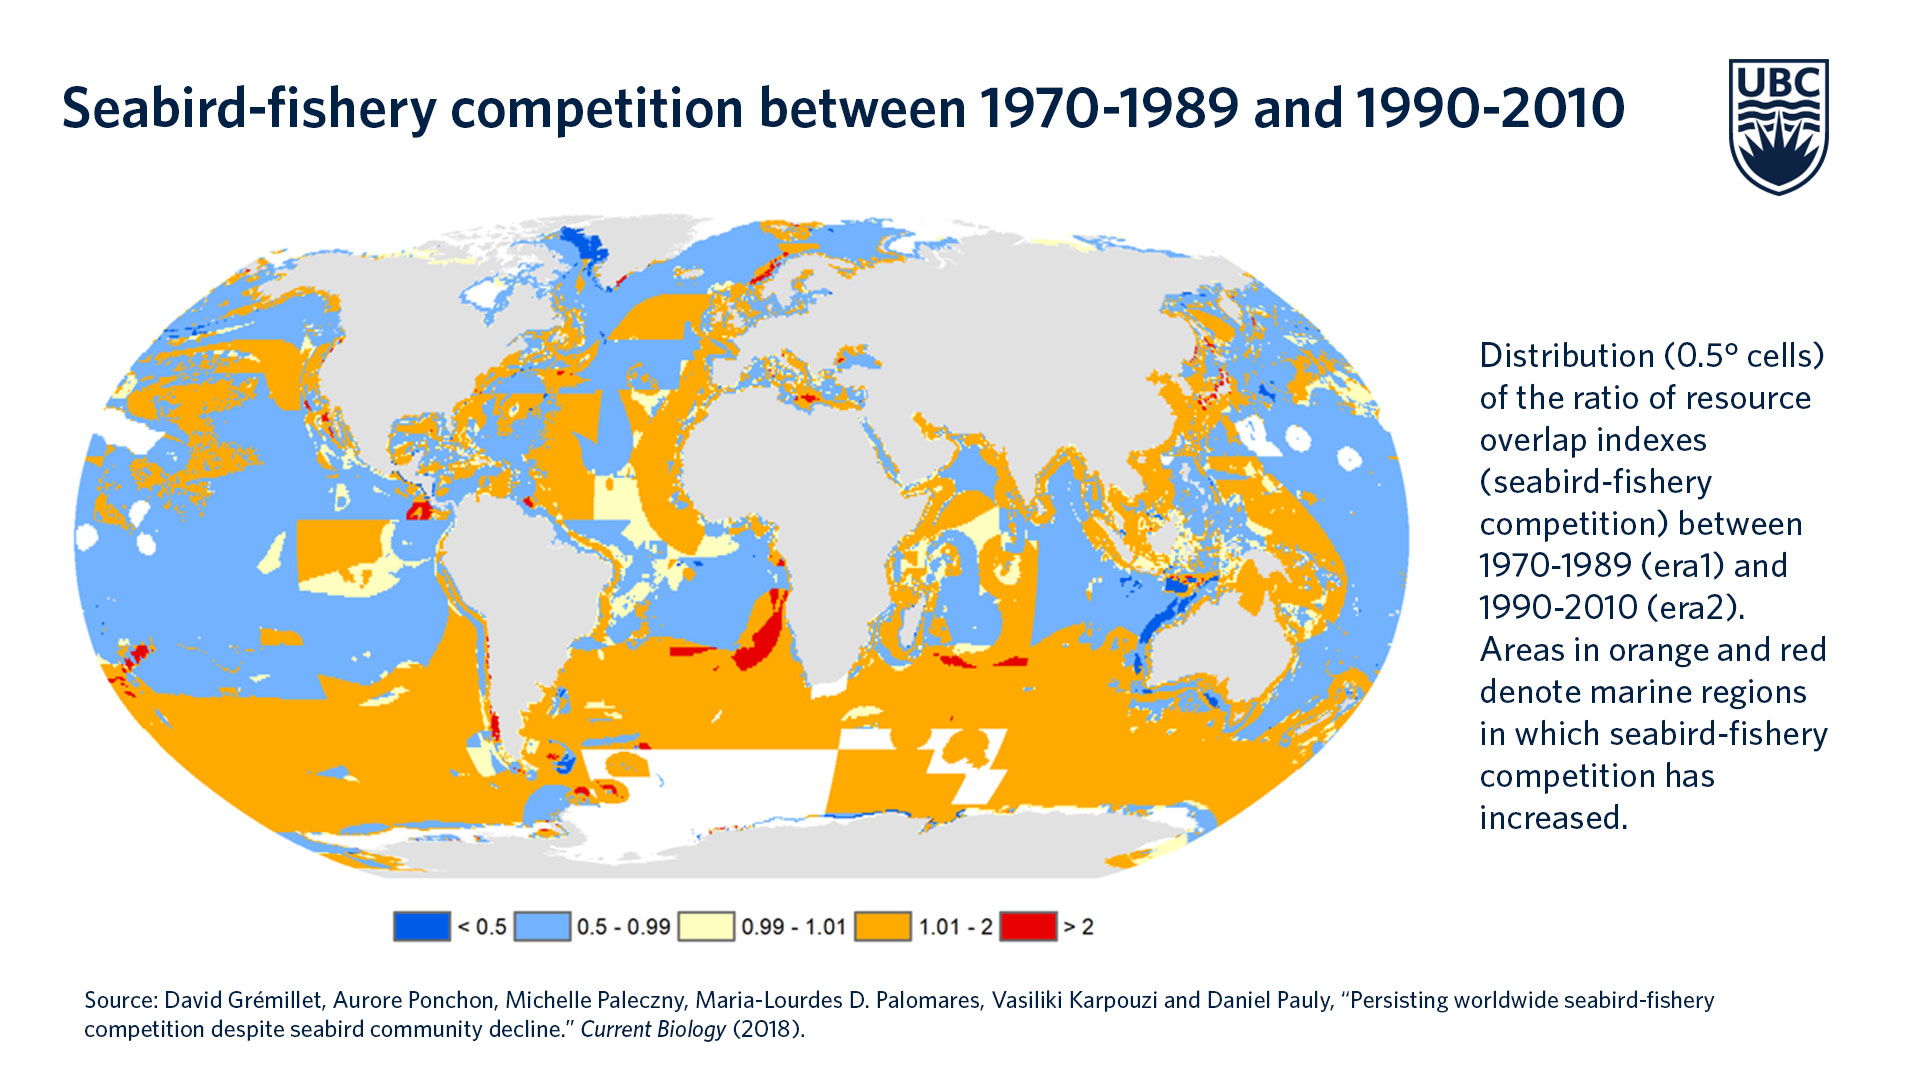 Las areas de rojo y naranja indican las regiones marinas en las que más ha aumentado la competencia por la pesca de aves marinas. Click sobre la imagen para ampliar.